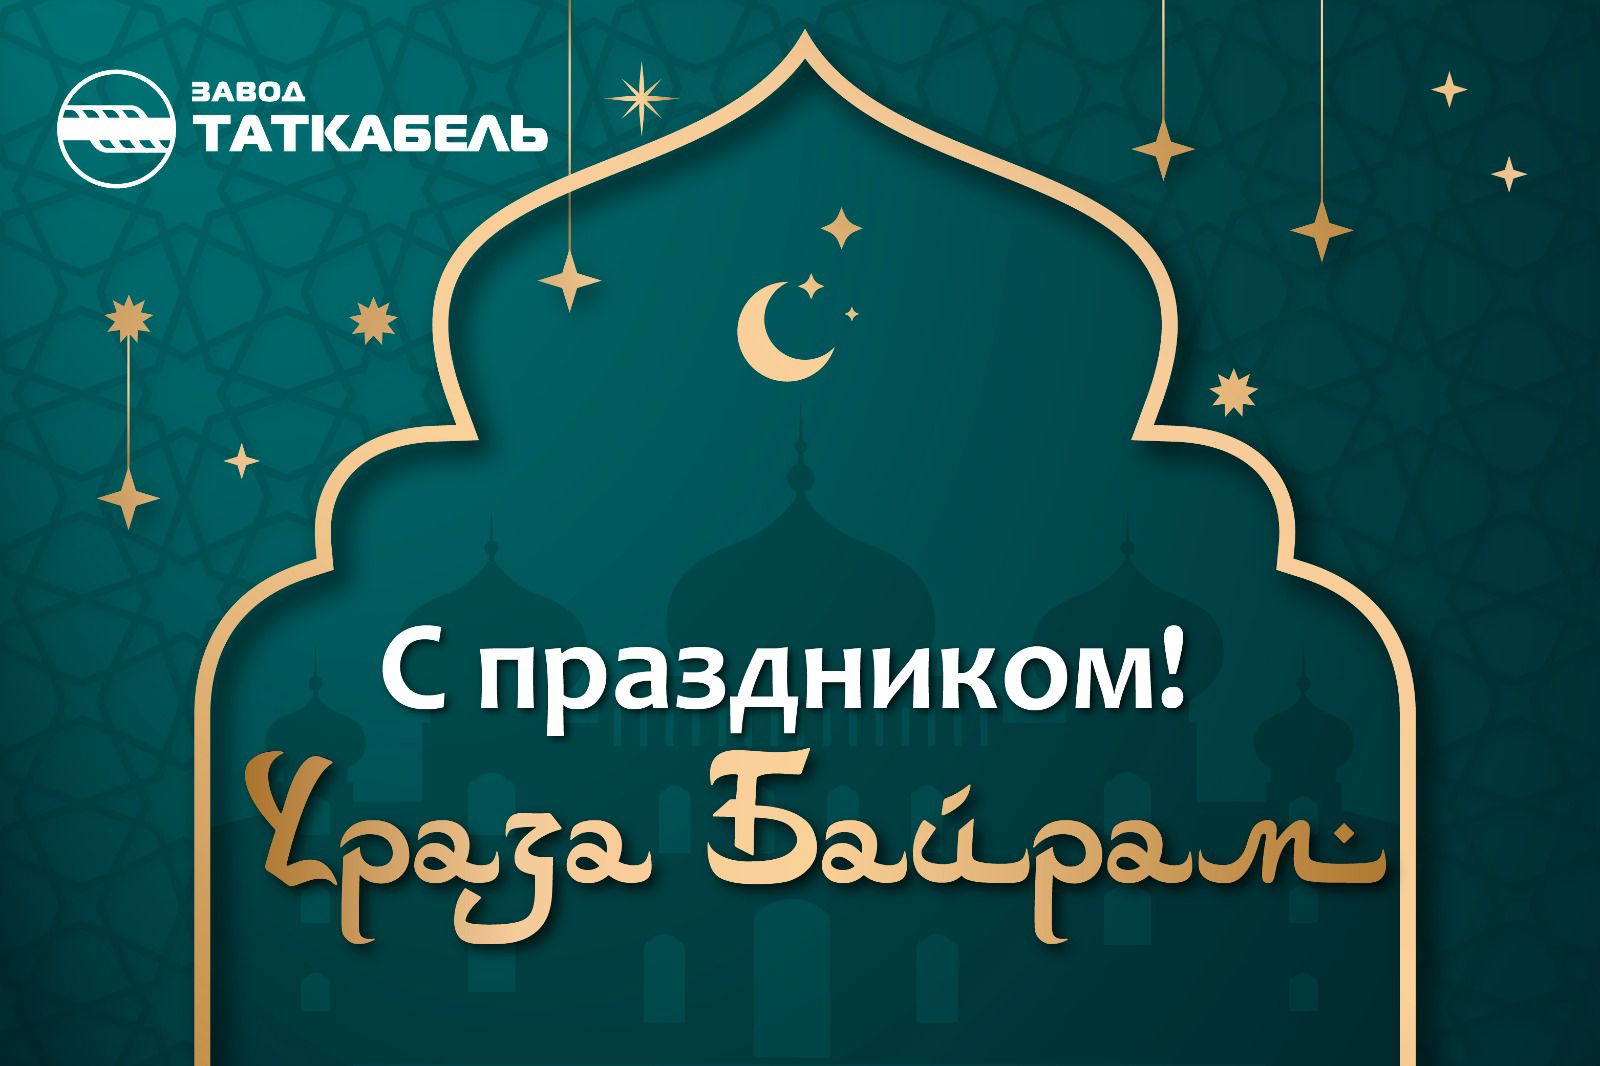 Сердечно поздравляем вас с окончанием священного месяца Рамадан и праздником Ураза-байрам – Ид аль-Фитр! 